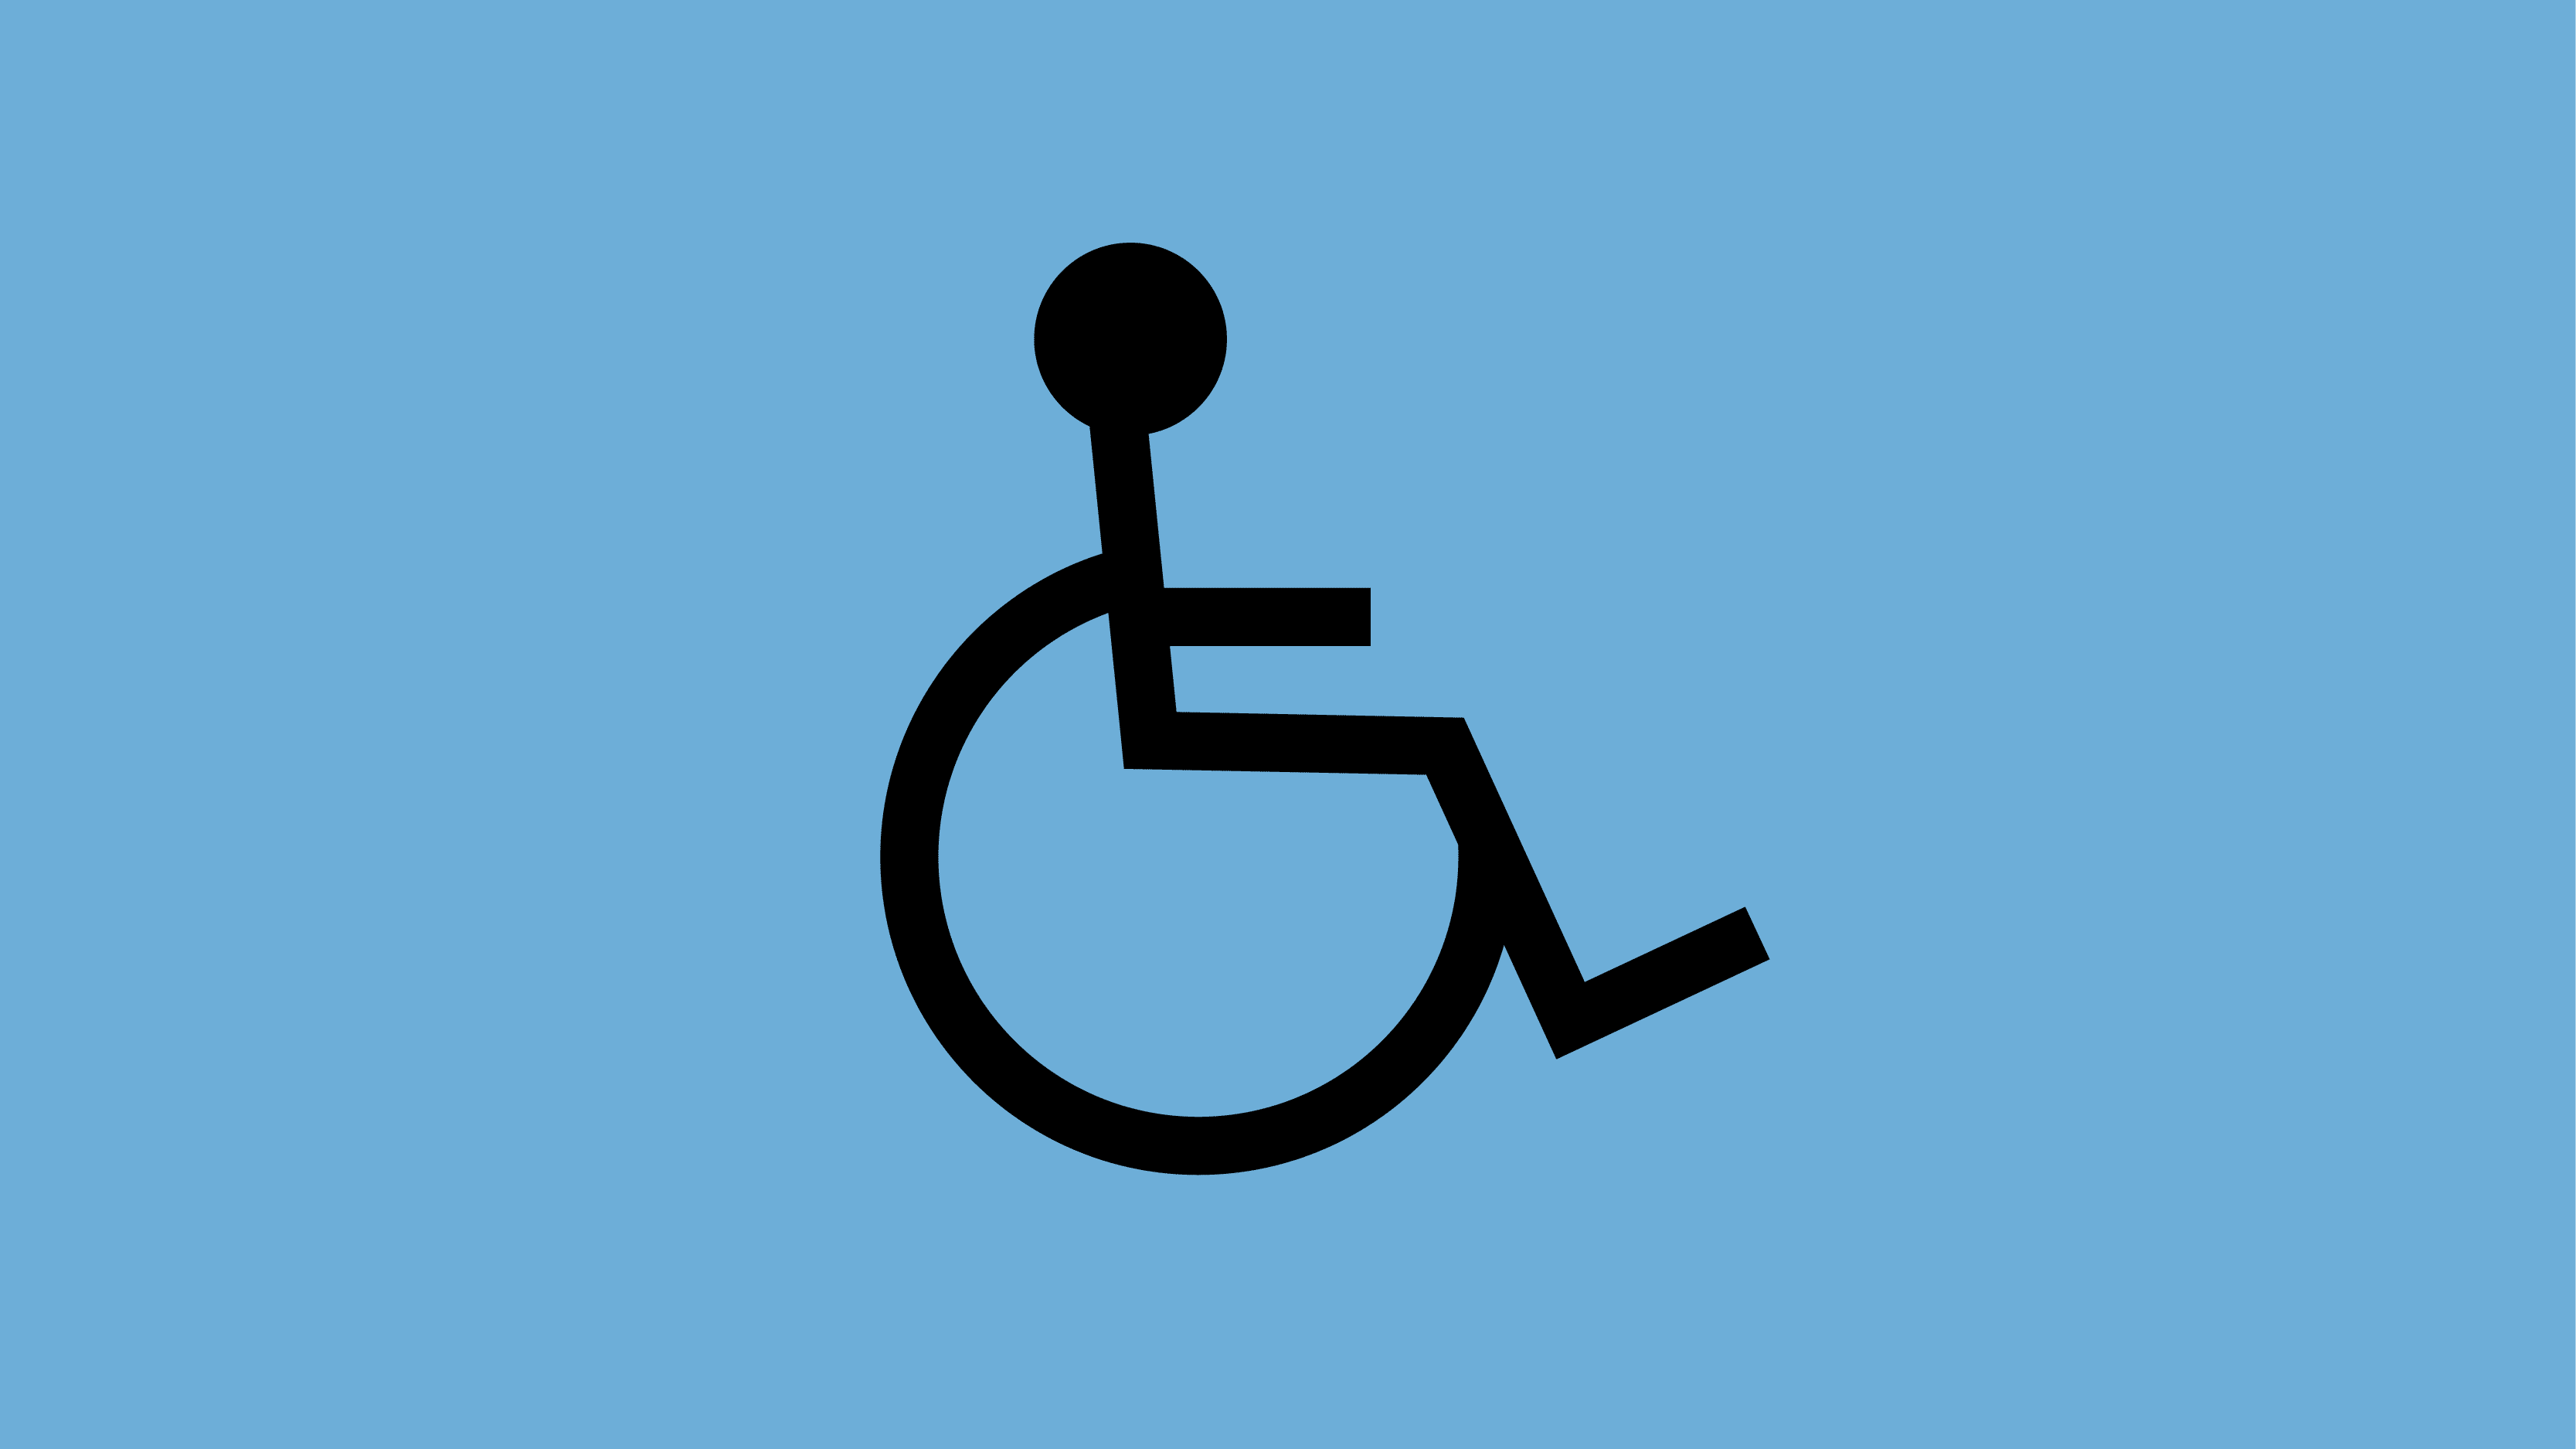 Estudio sobre la discapacidad: modelos de tratamientos y aproximación legal - Ideas y Negocios Rentables